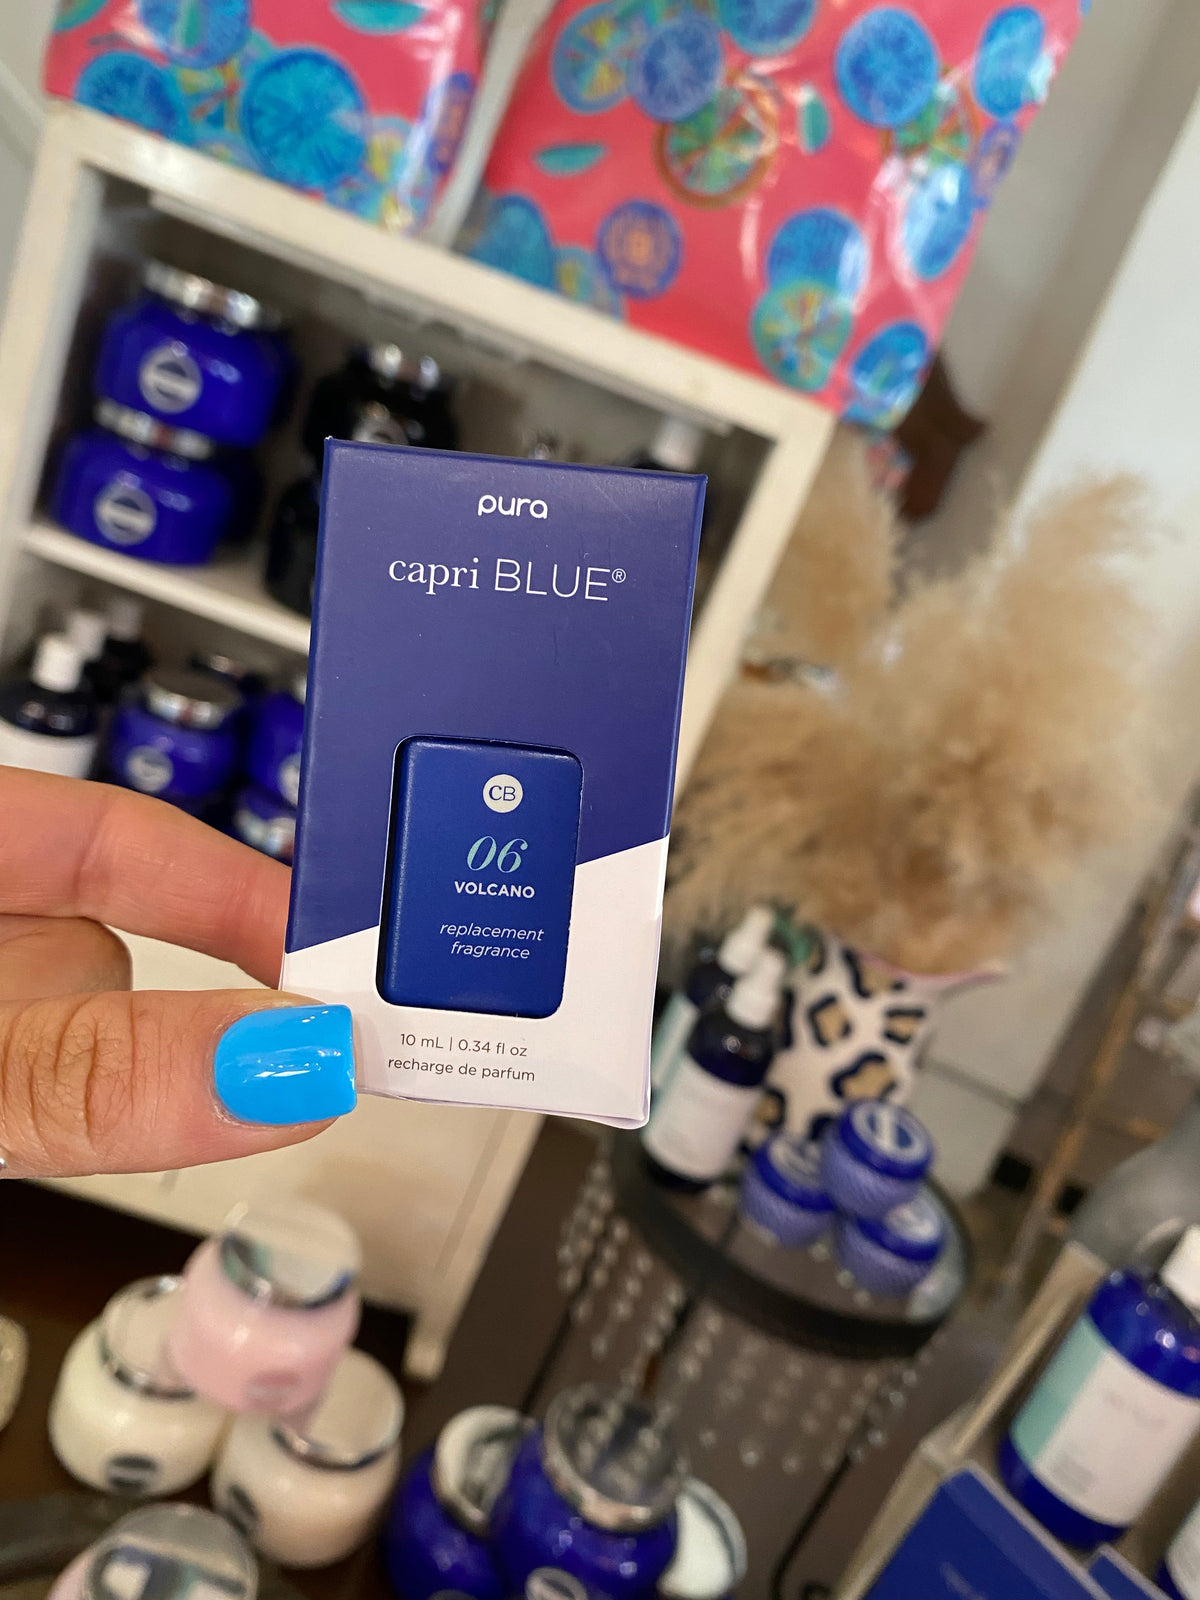 CAPRI BLUE - PURA Diffuser Refill - VOLCANO